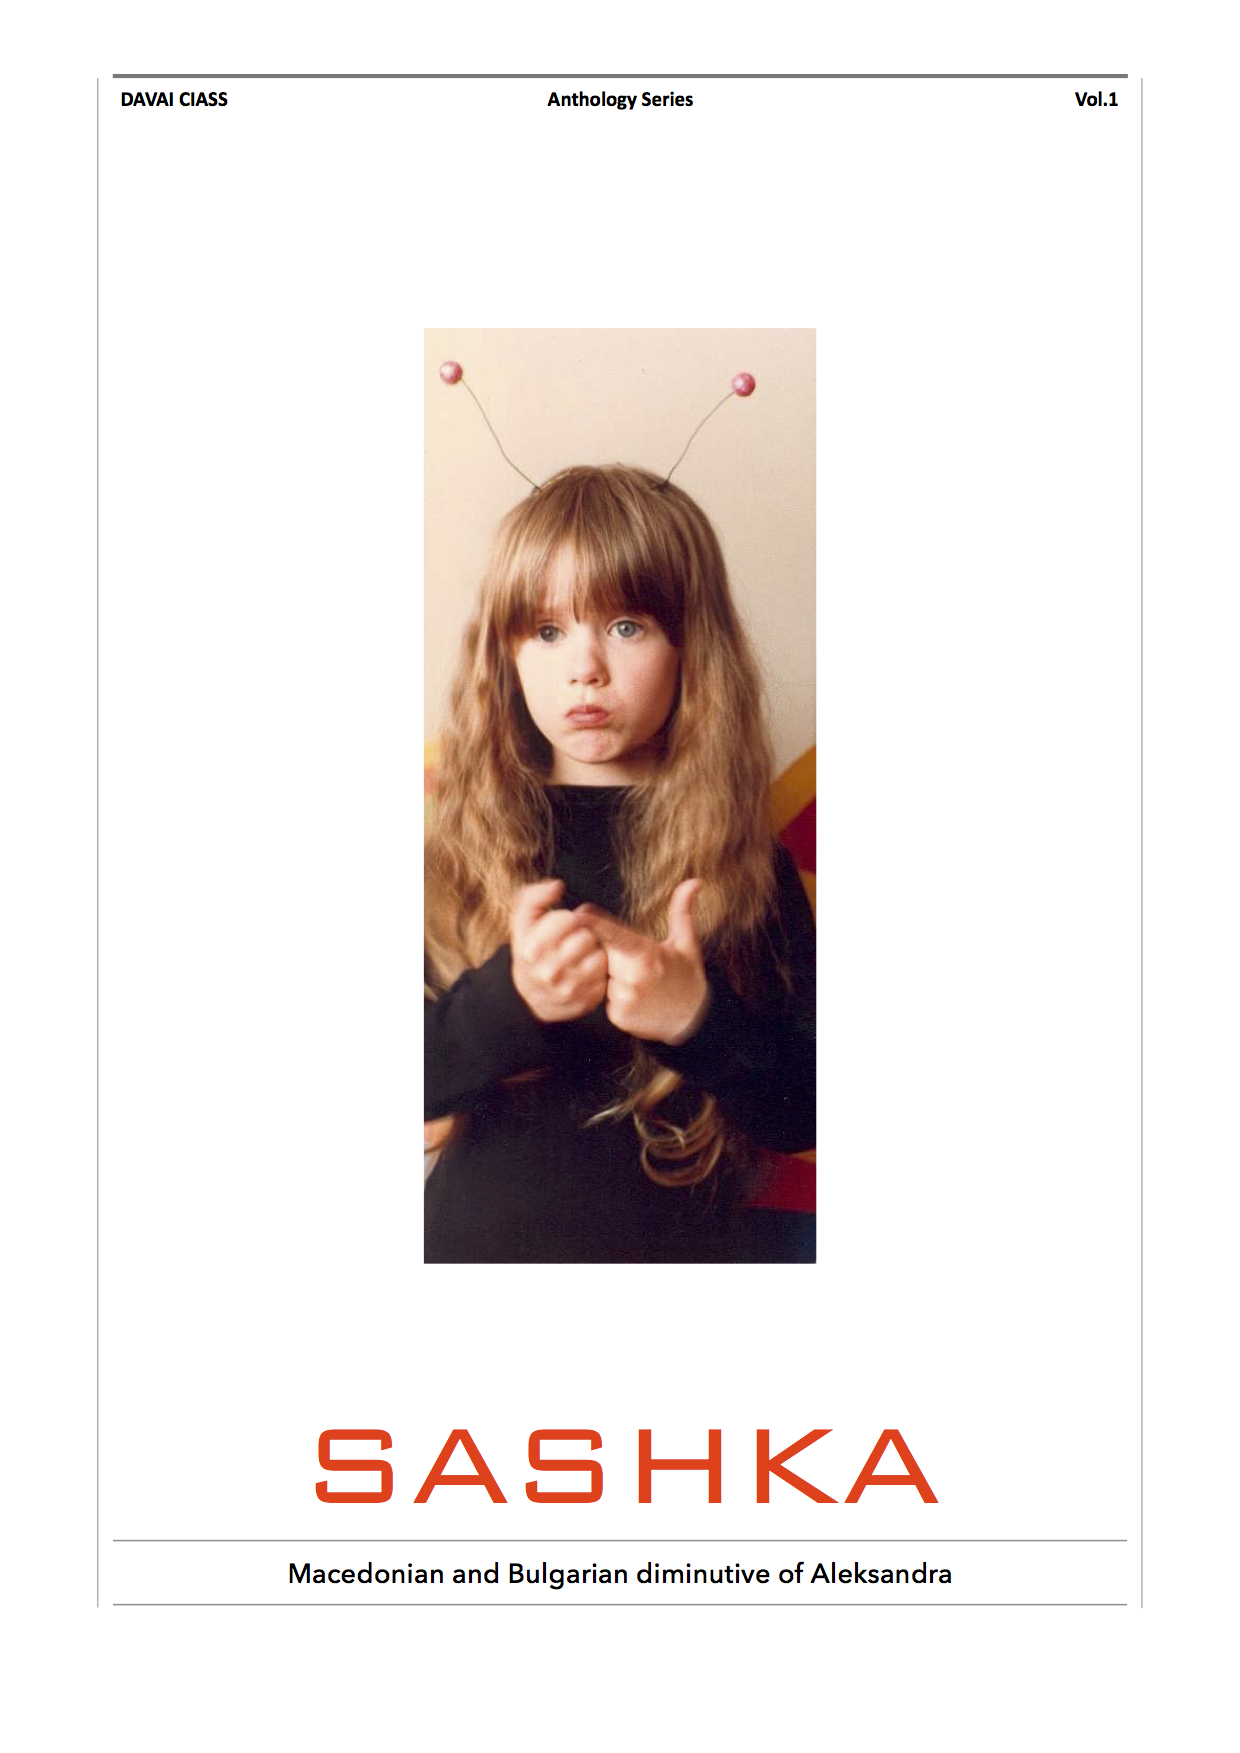 Sashka